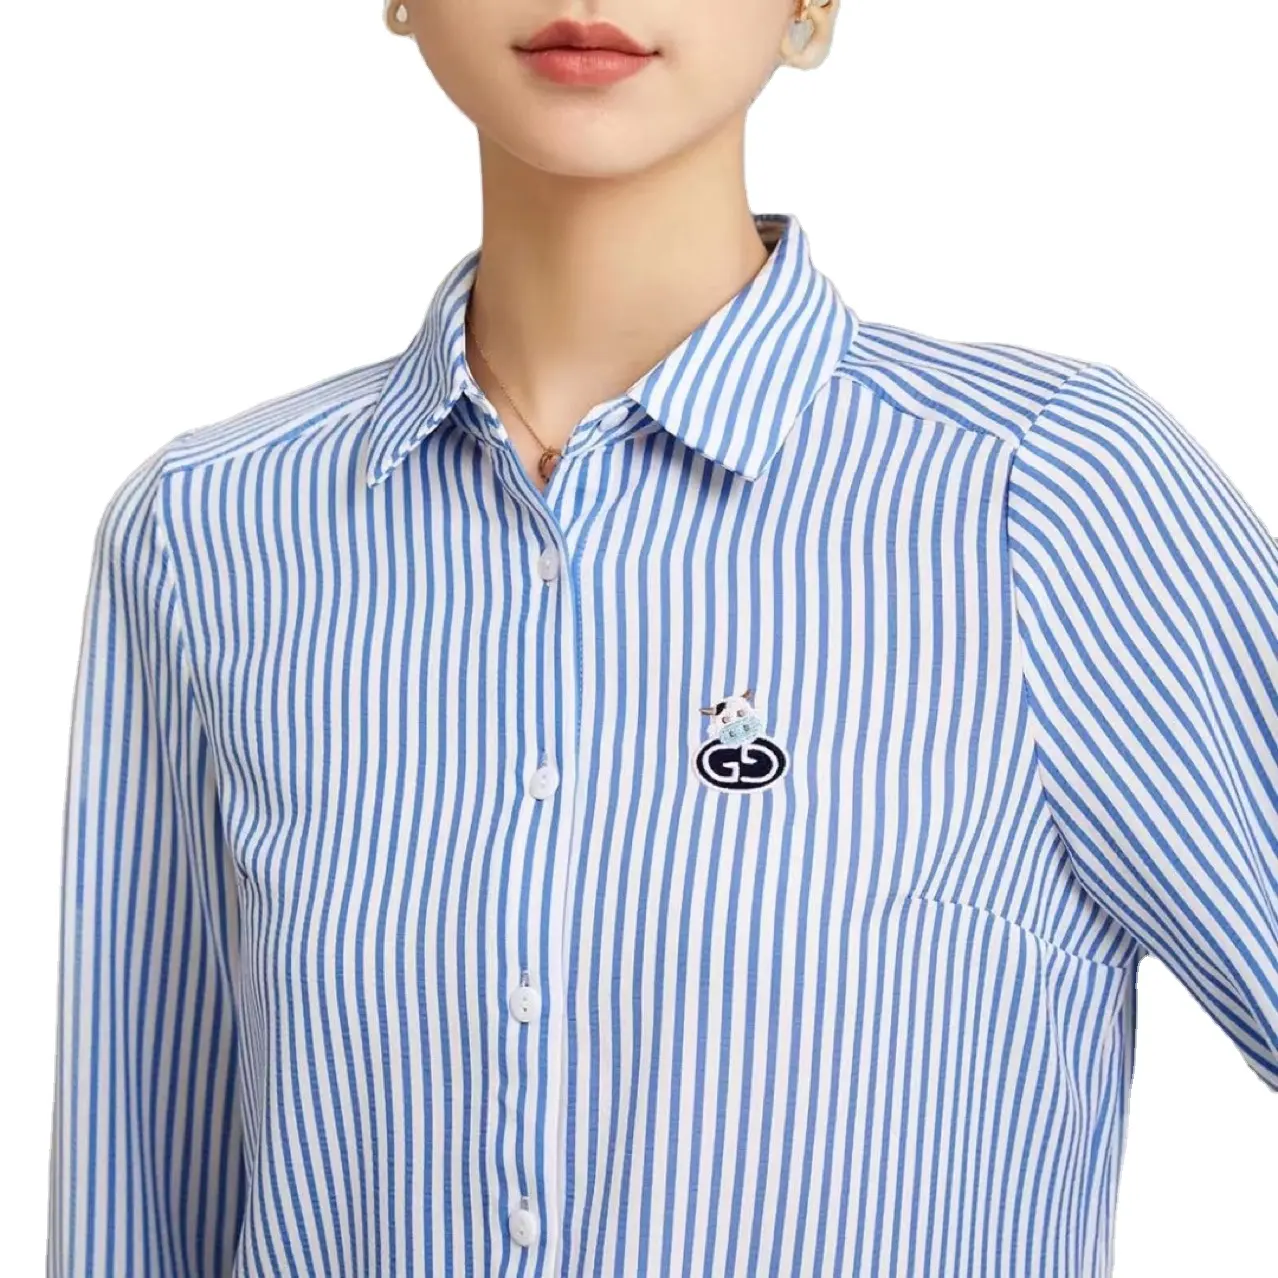 Blusa feminina spandex algodão manga comprida, camiseta feminina botões azul listrado casual trabalho